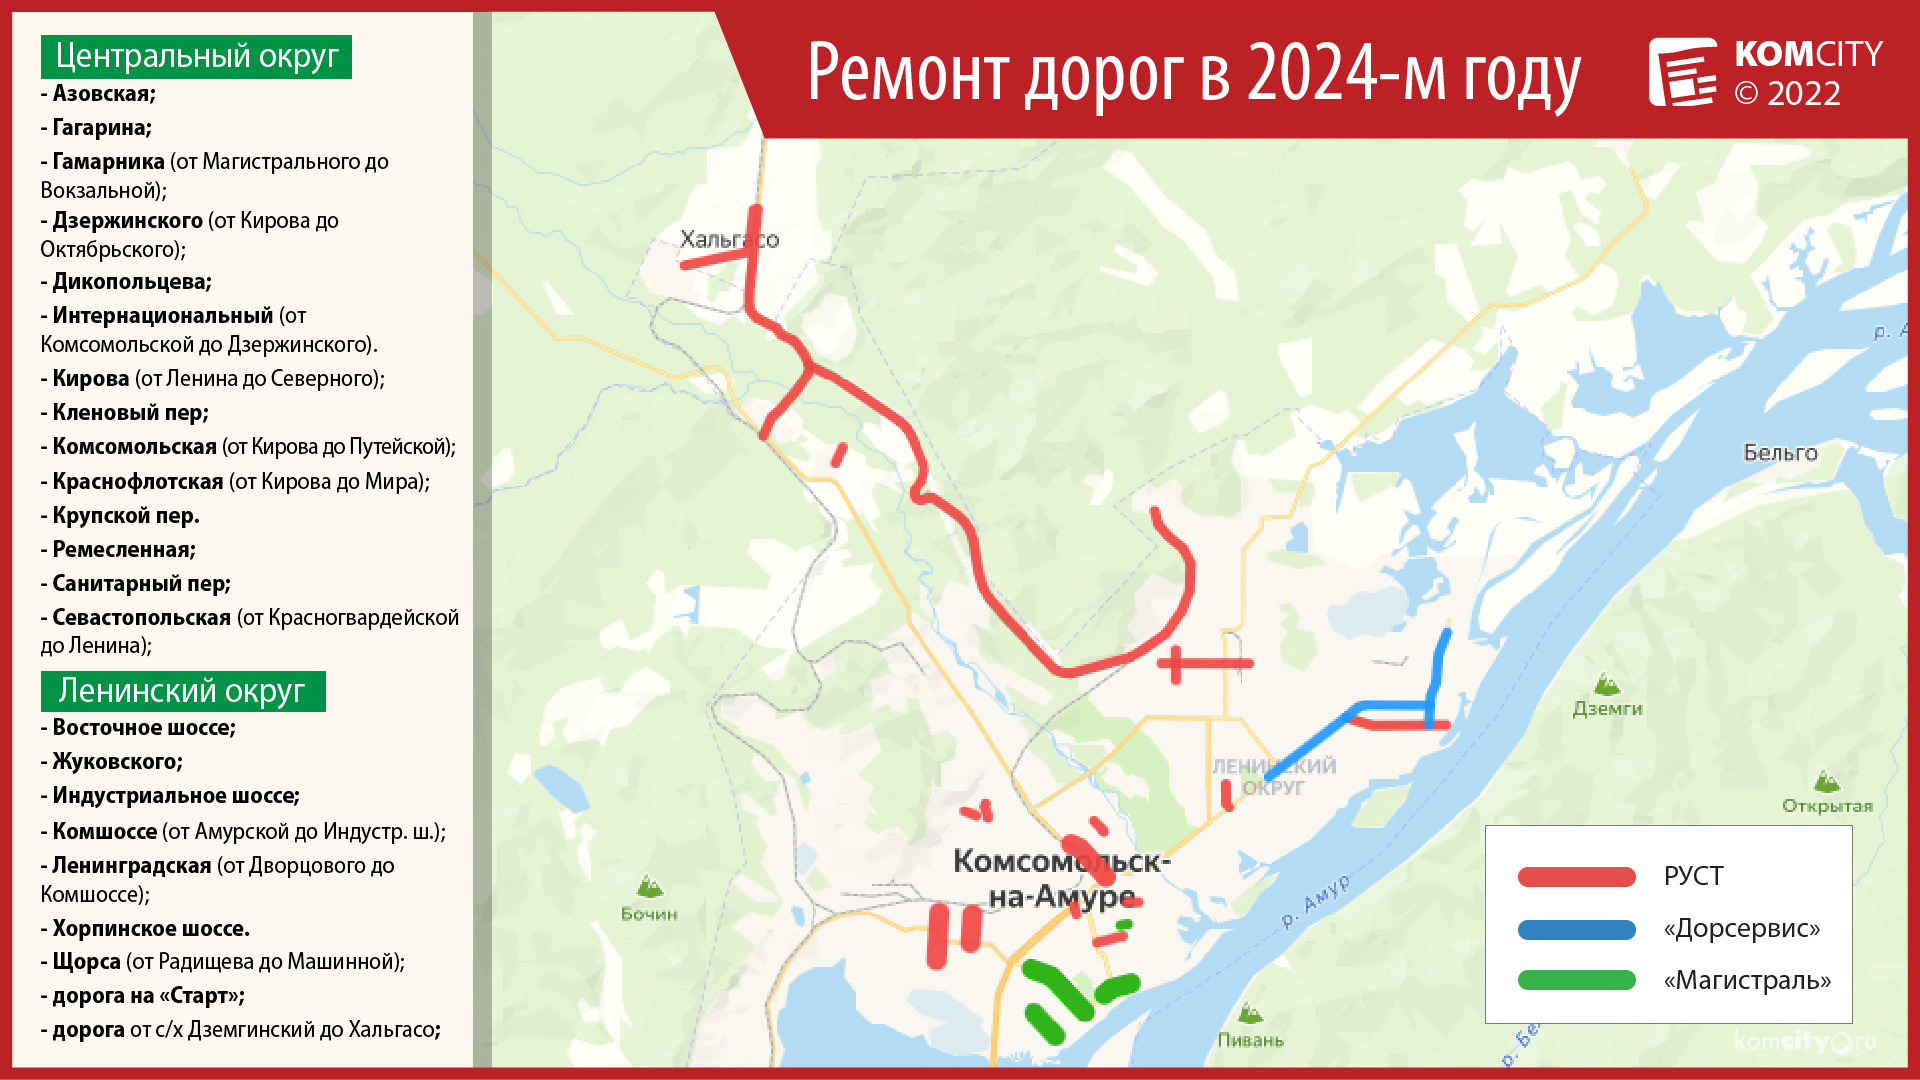 В 2024 году в Комсомольске-на-Амуре отремонтируют 23 улицы